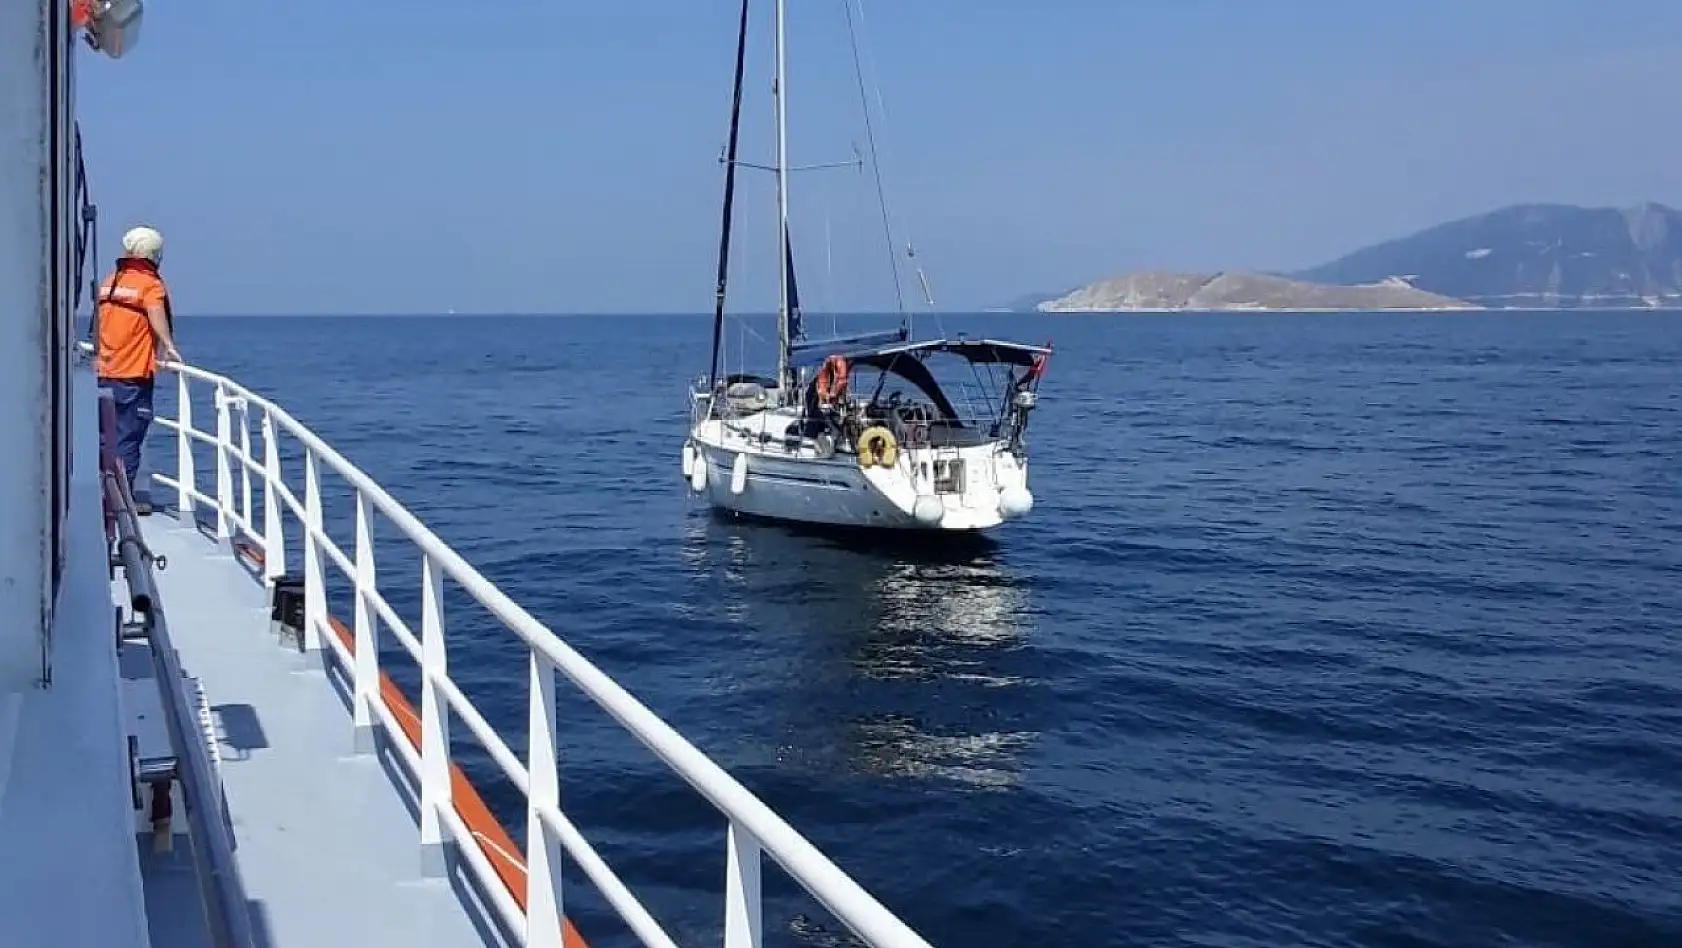 Makine arızası ile denizde sürüklenen tekne Marmara Adası Limanı'na yanaştırıldı